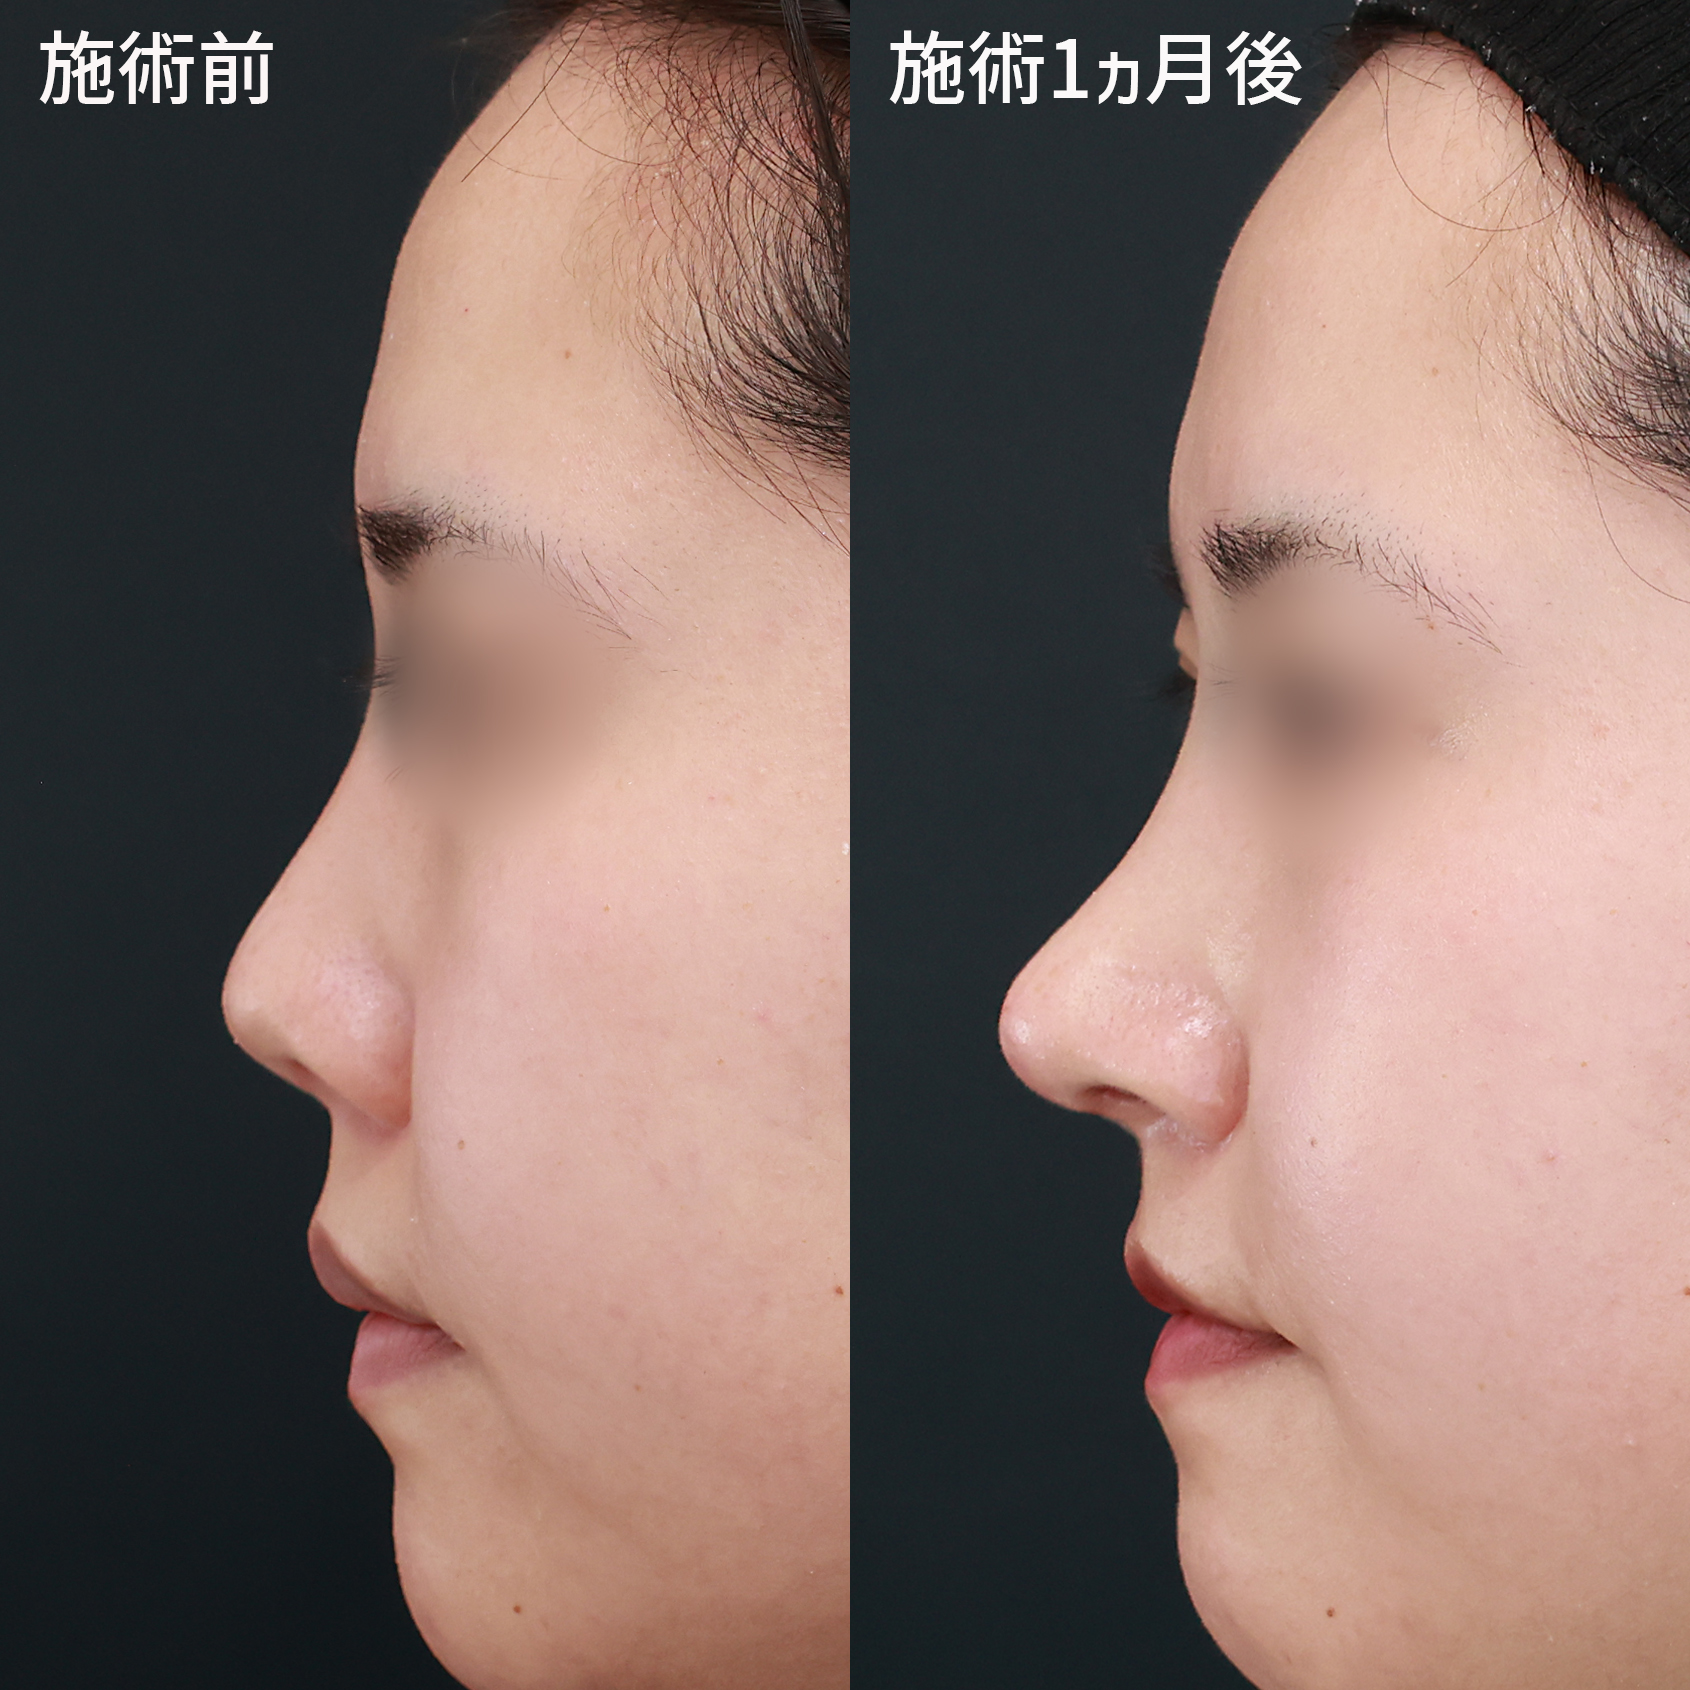 症例写真 ビフォーアフター ダウンタイム 副作用 鼻中隔延長で 今流行の韓国風アップノーズに Taクリニックグループ 美容整形 美容外科 全国展開中